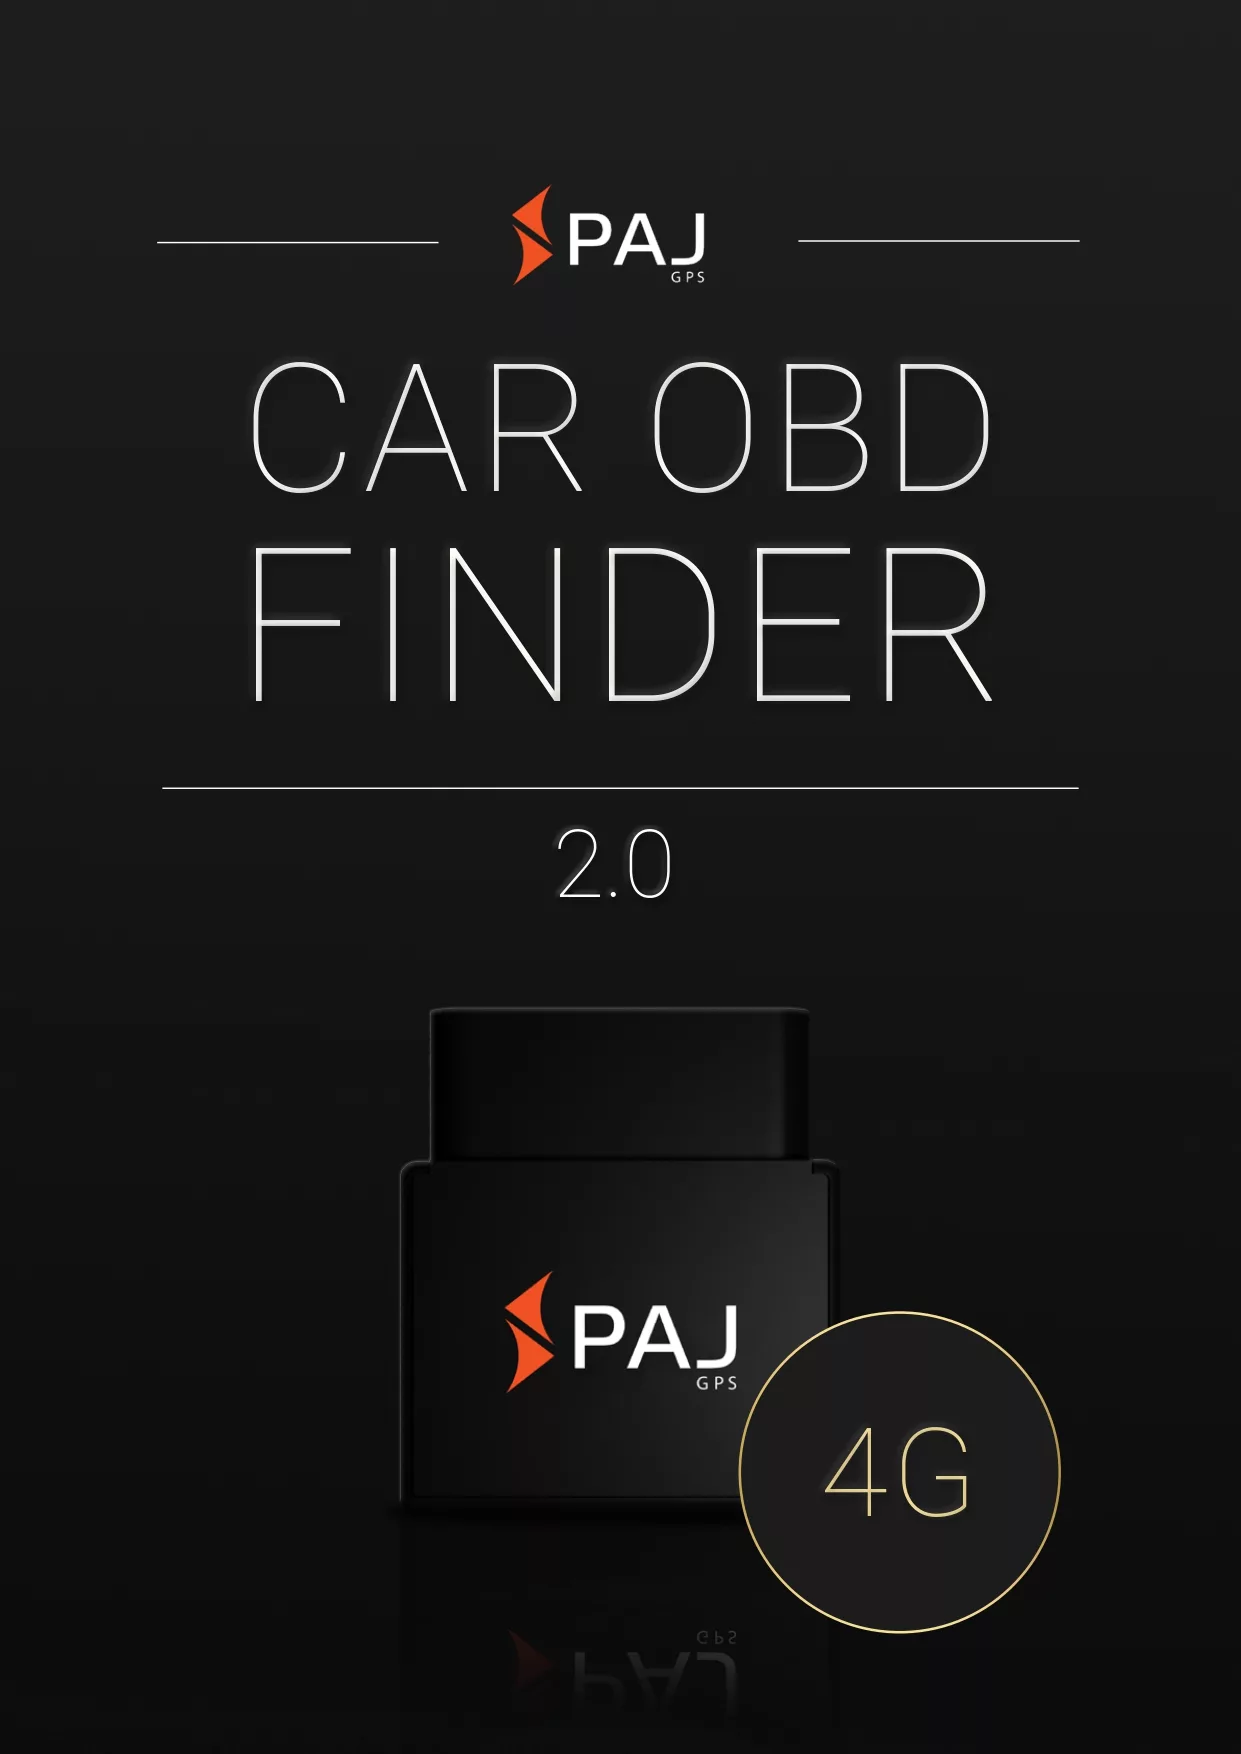 Image de couverture Instructions pour PAJ CAR OBD finder 4G 2.0